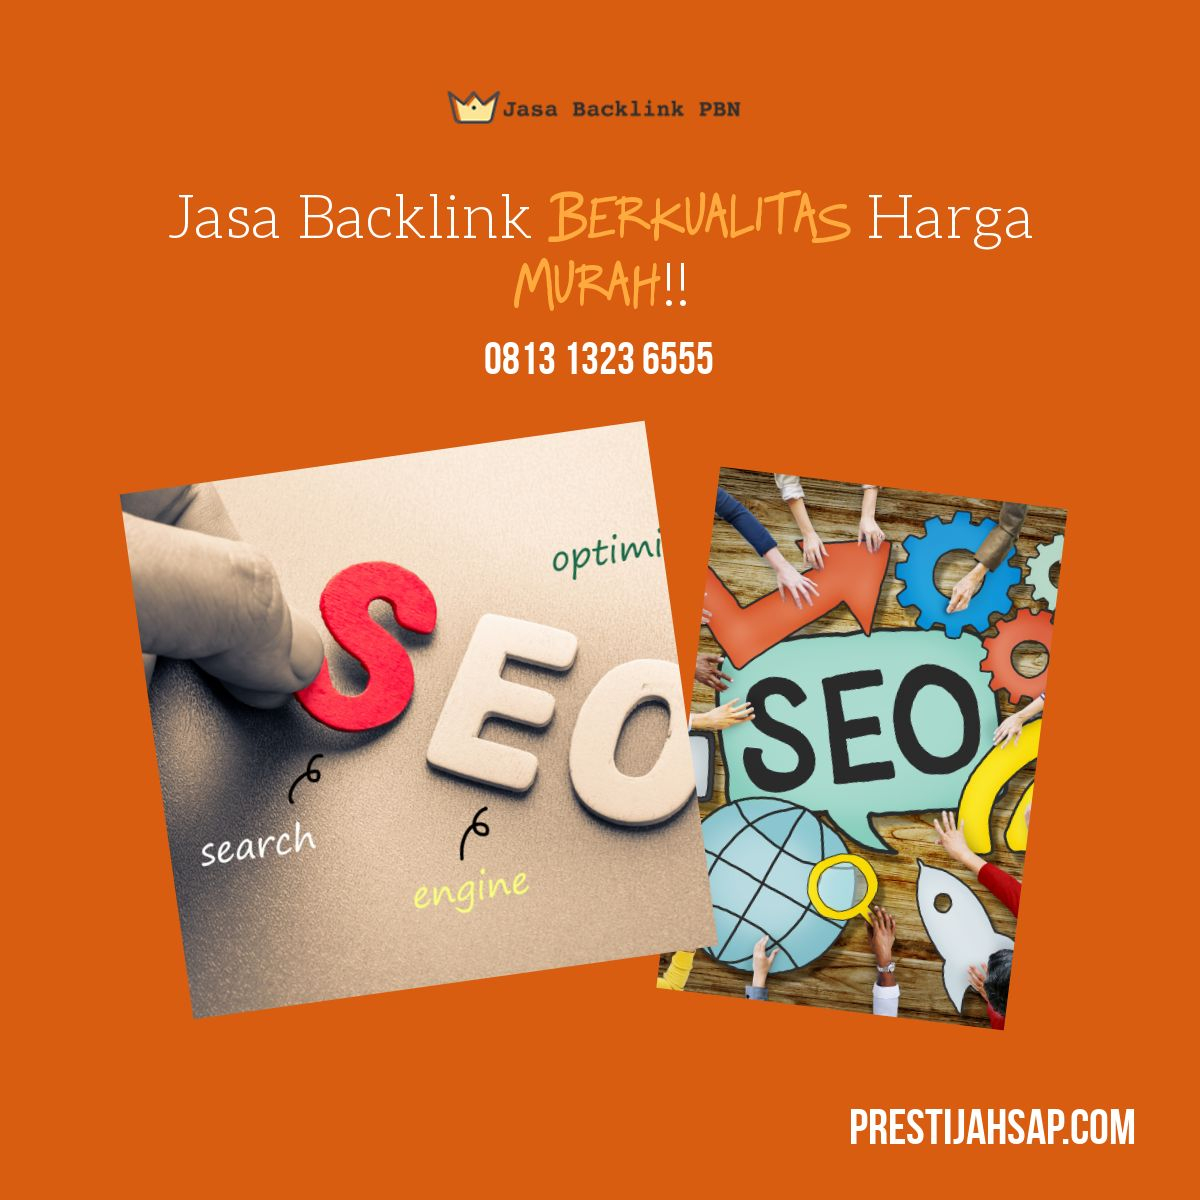 Jasa Backlink Review